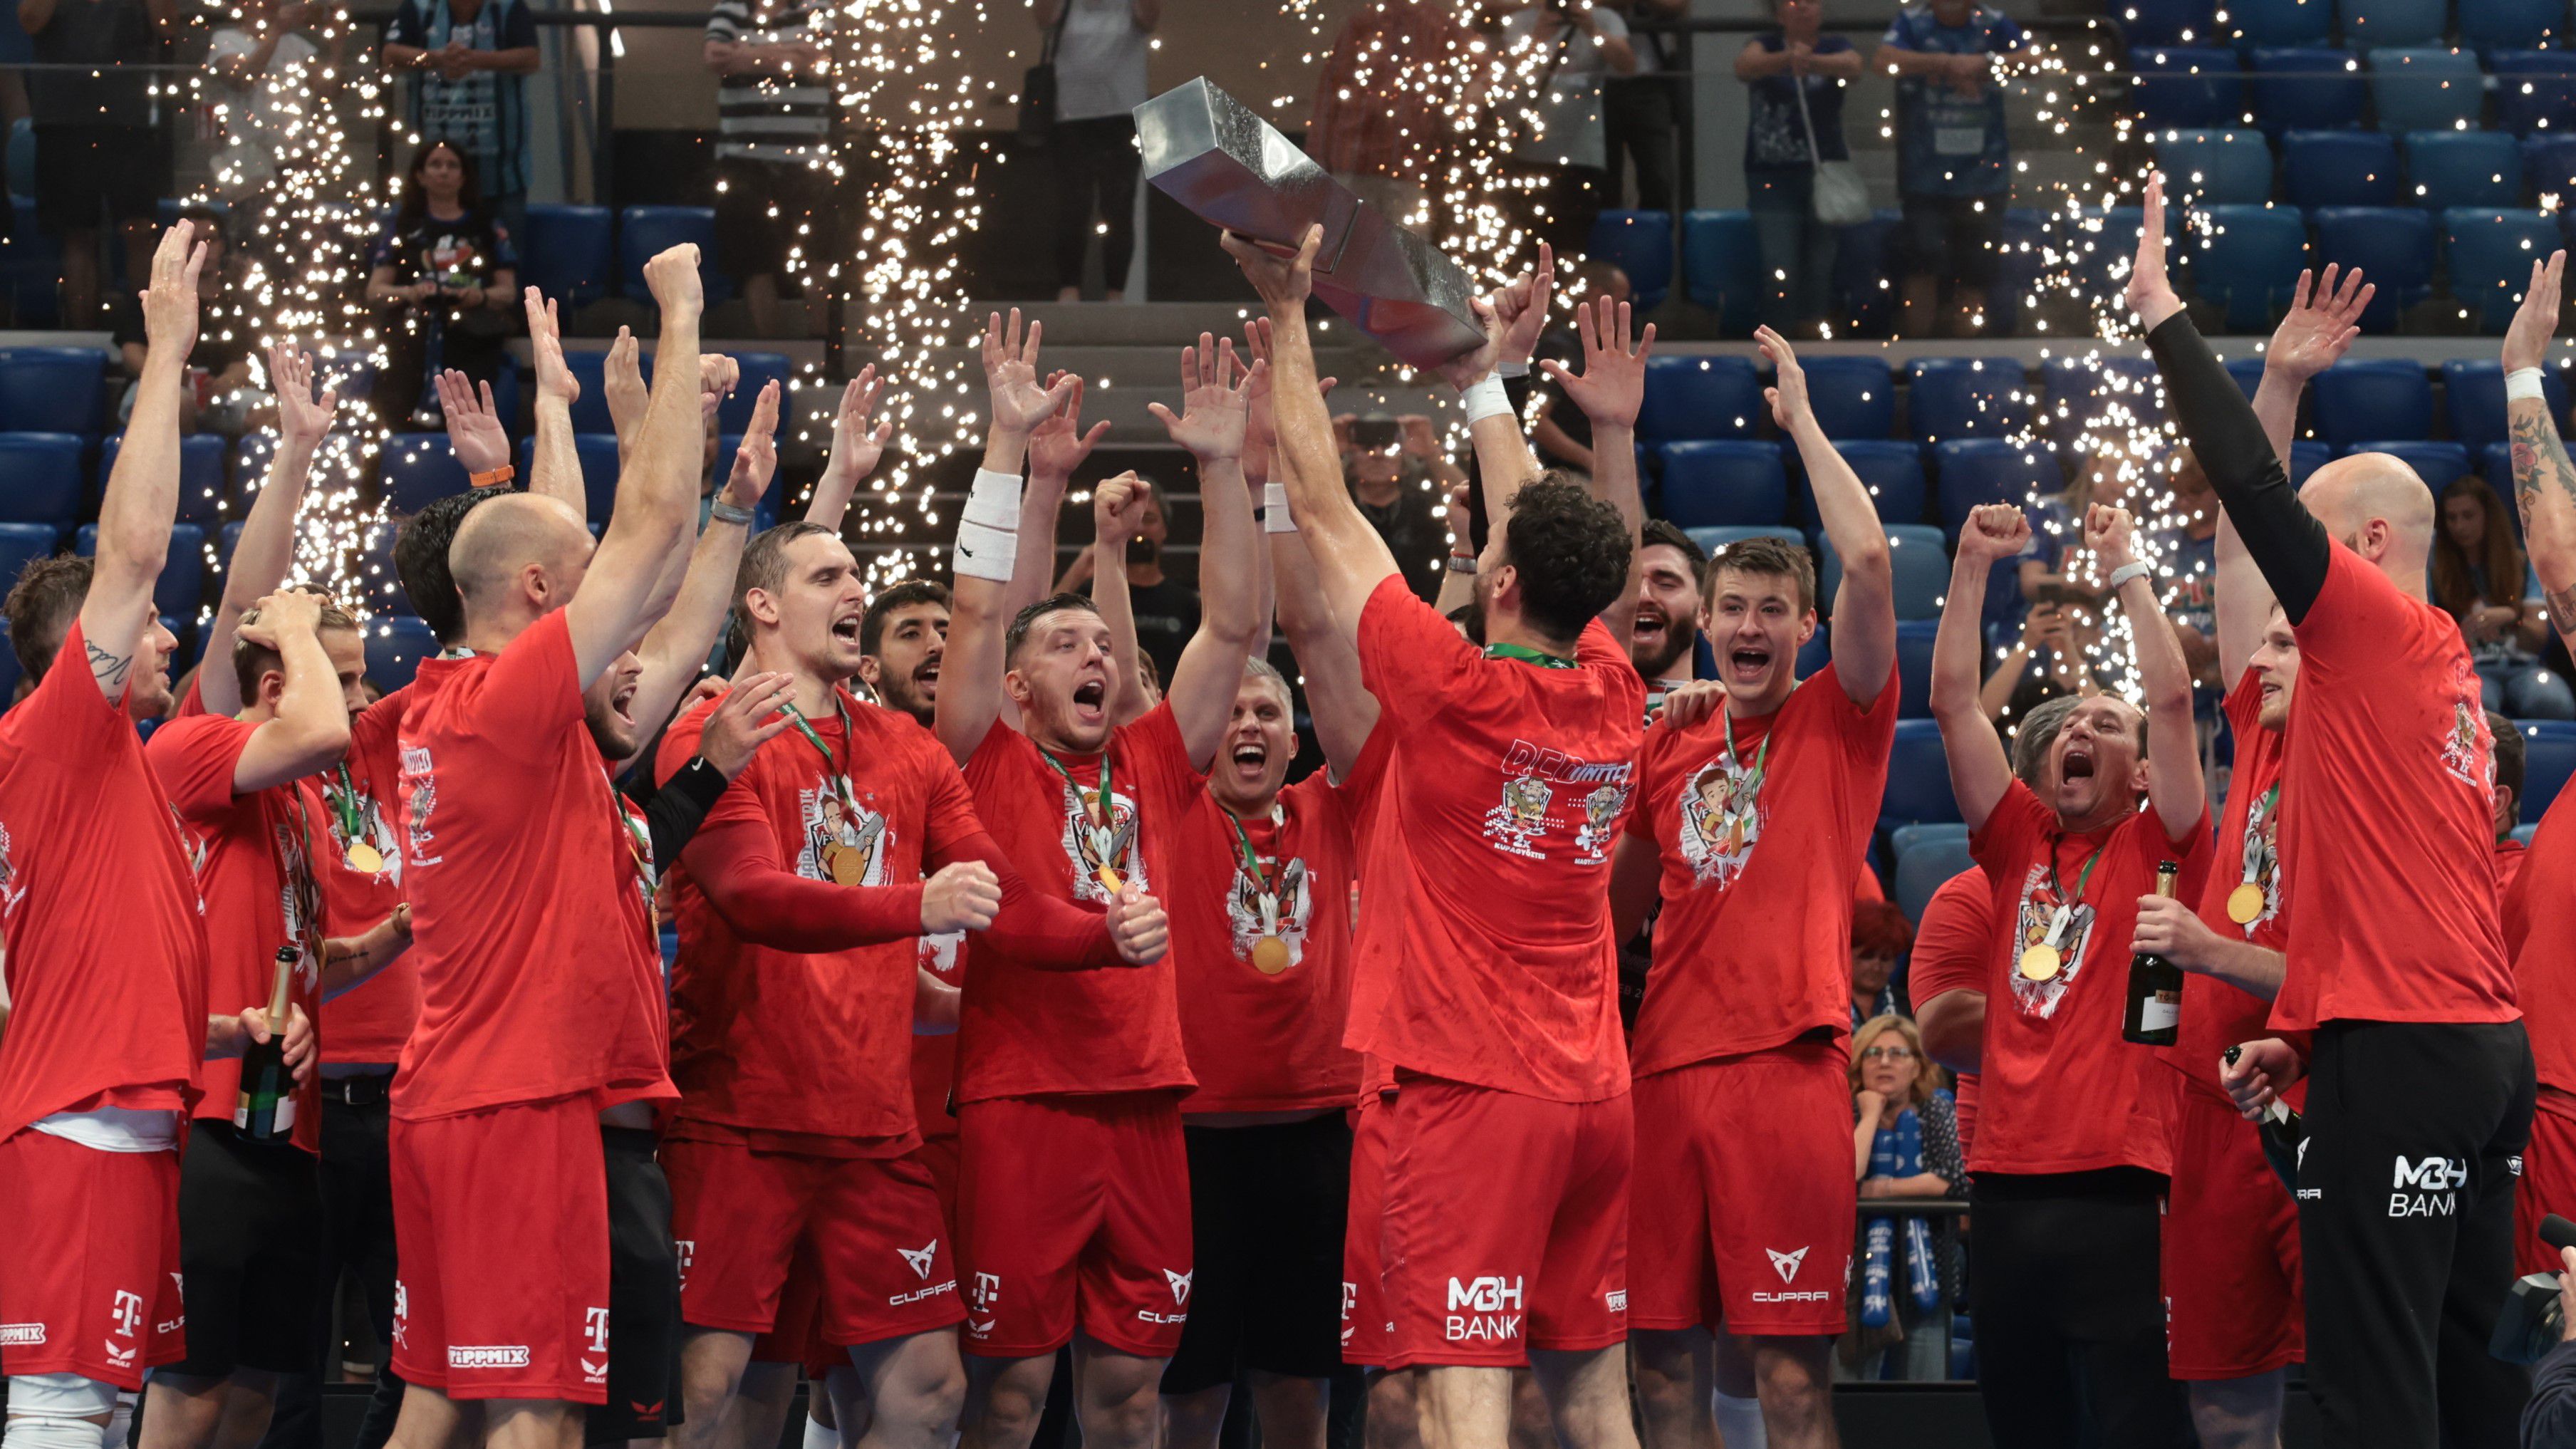 Galéria: esélyt sem kapott a Szeged, így ünnepelte újabb bajnoki címét a Veszprém!